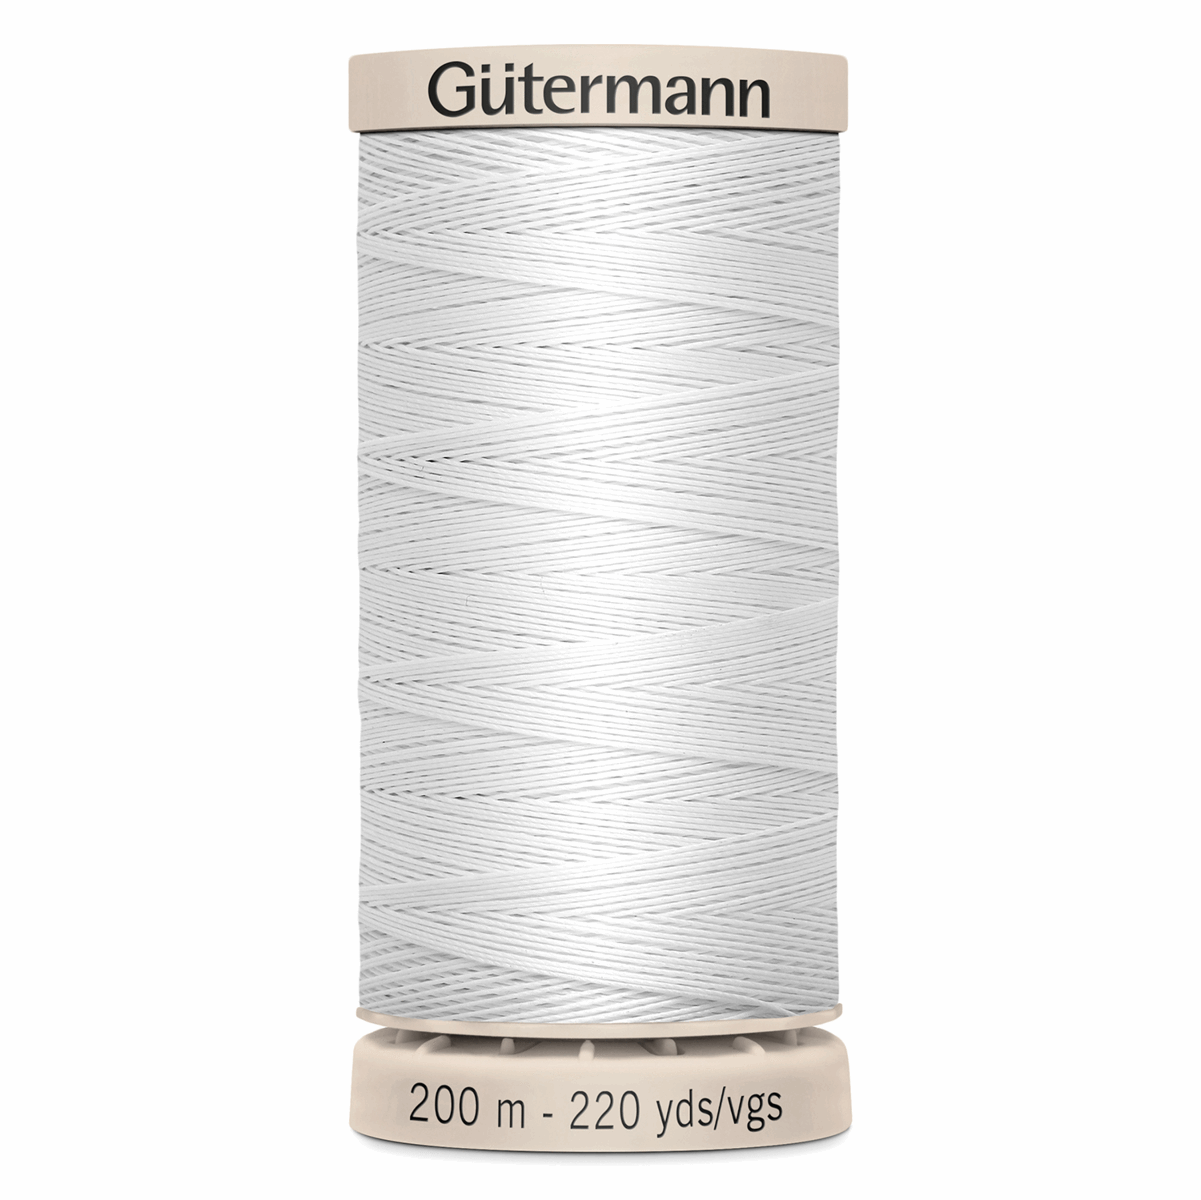 Gutermann Quilting Thread 200m - Colour 5709 (White)